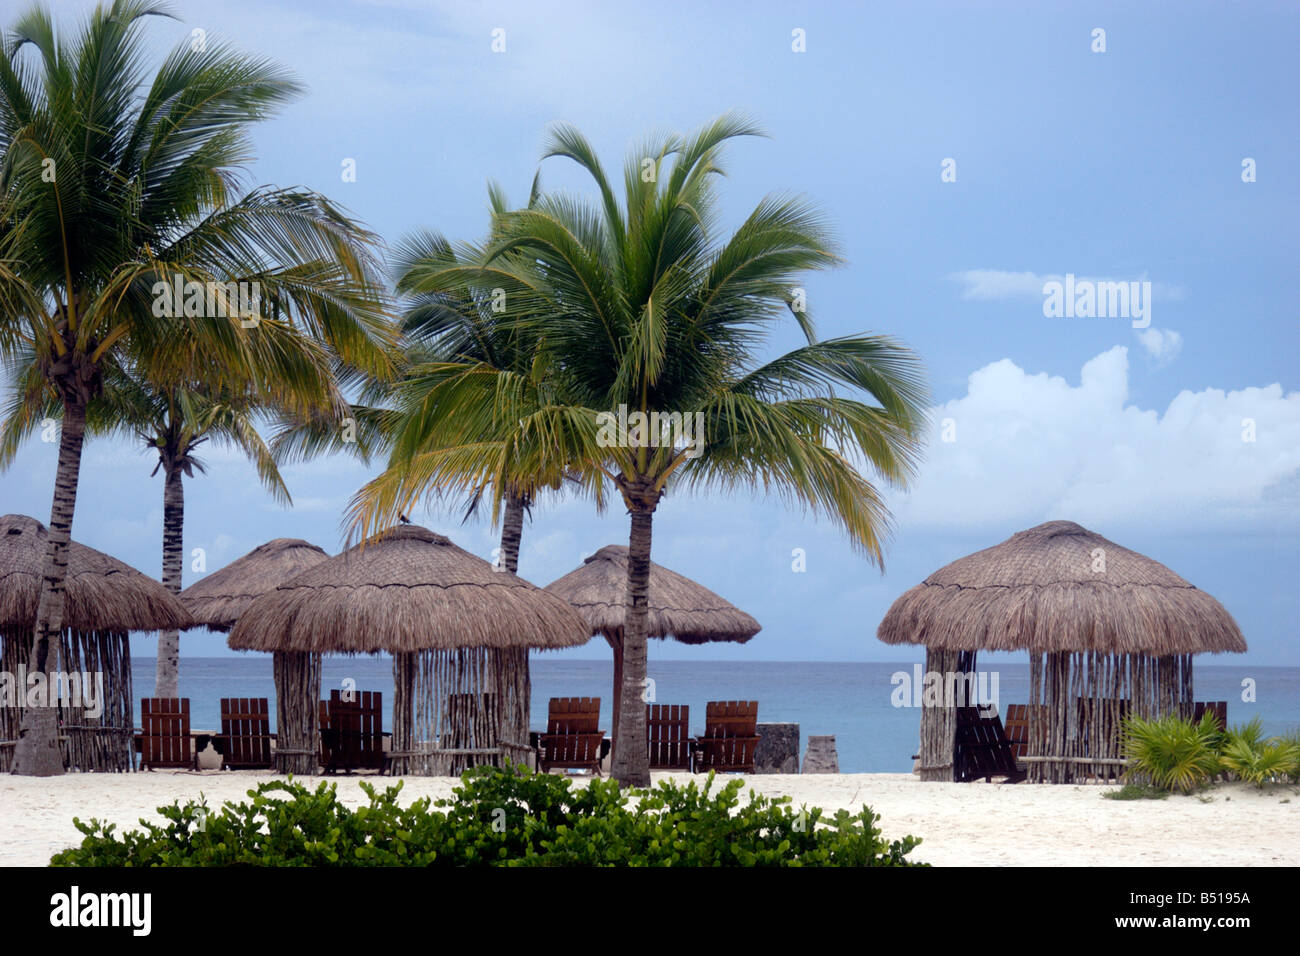 Hêtre avec ciel bleu, hêtre, palmiers et transats sur l'île de Cozumel au Mexique Banque D'Images